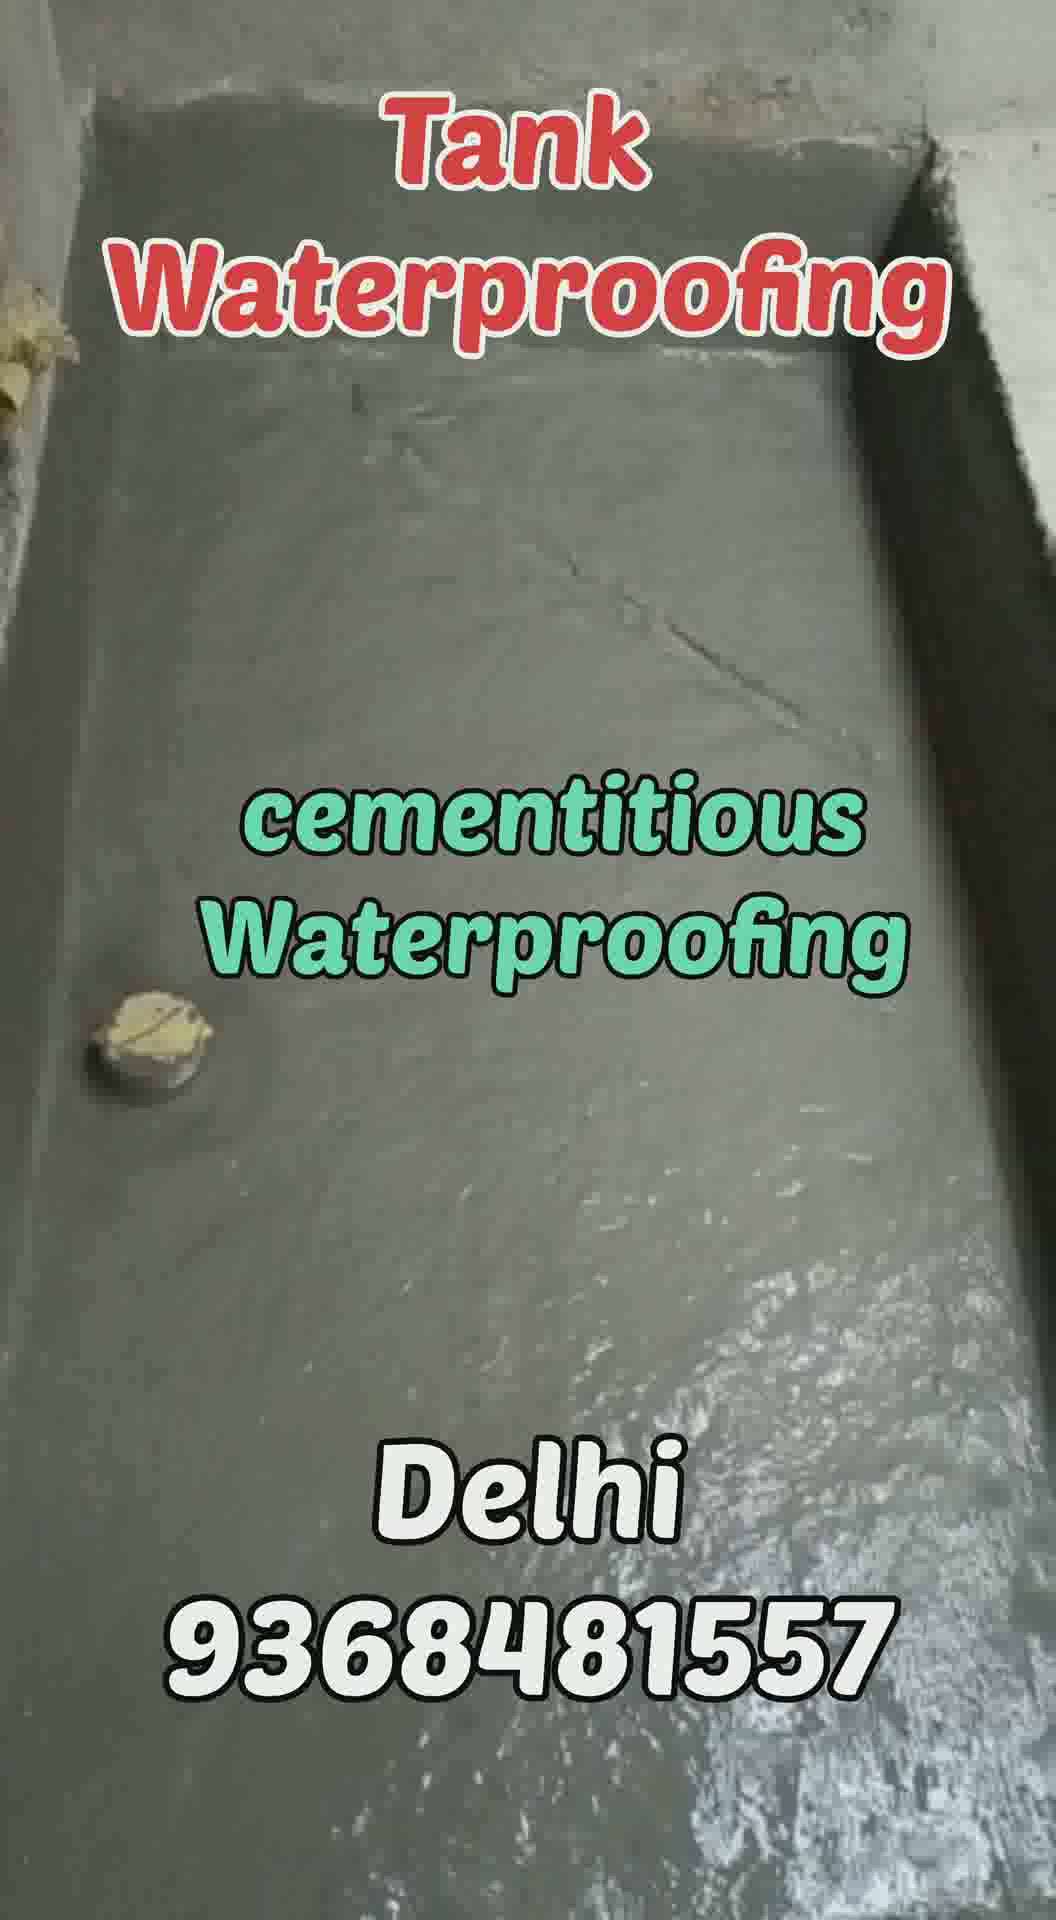 waterproofing 
#WaterProofing